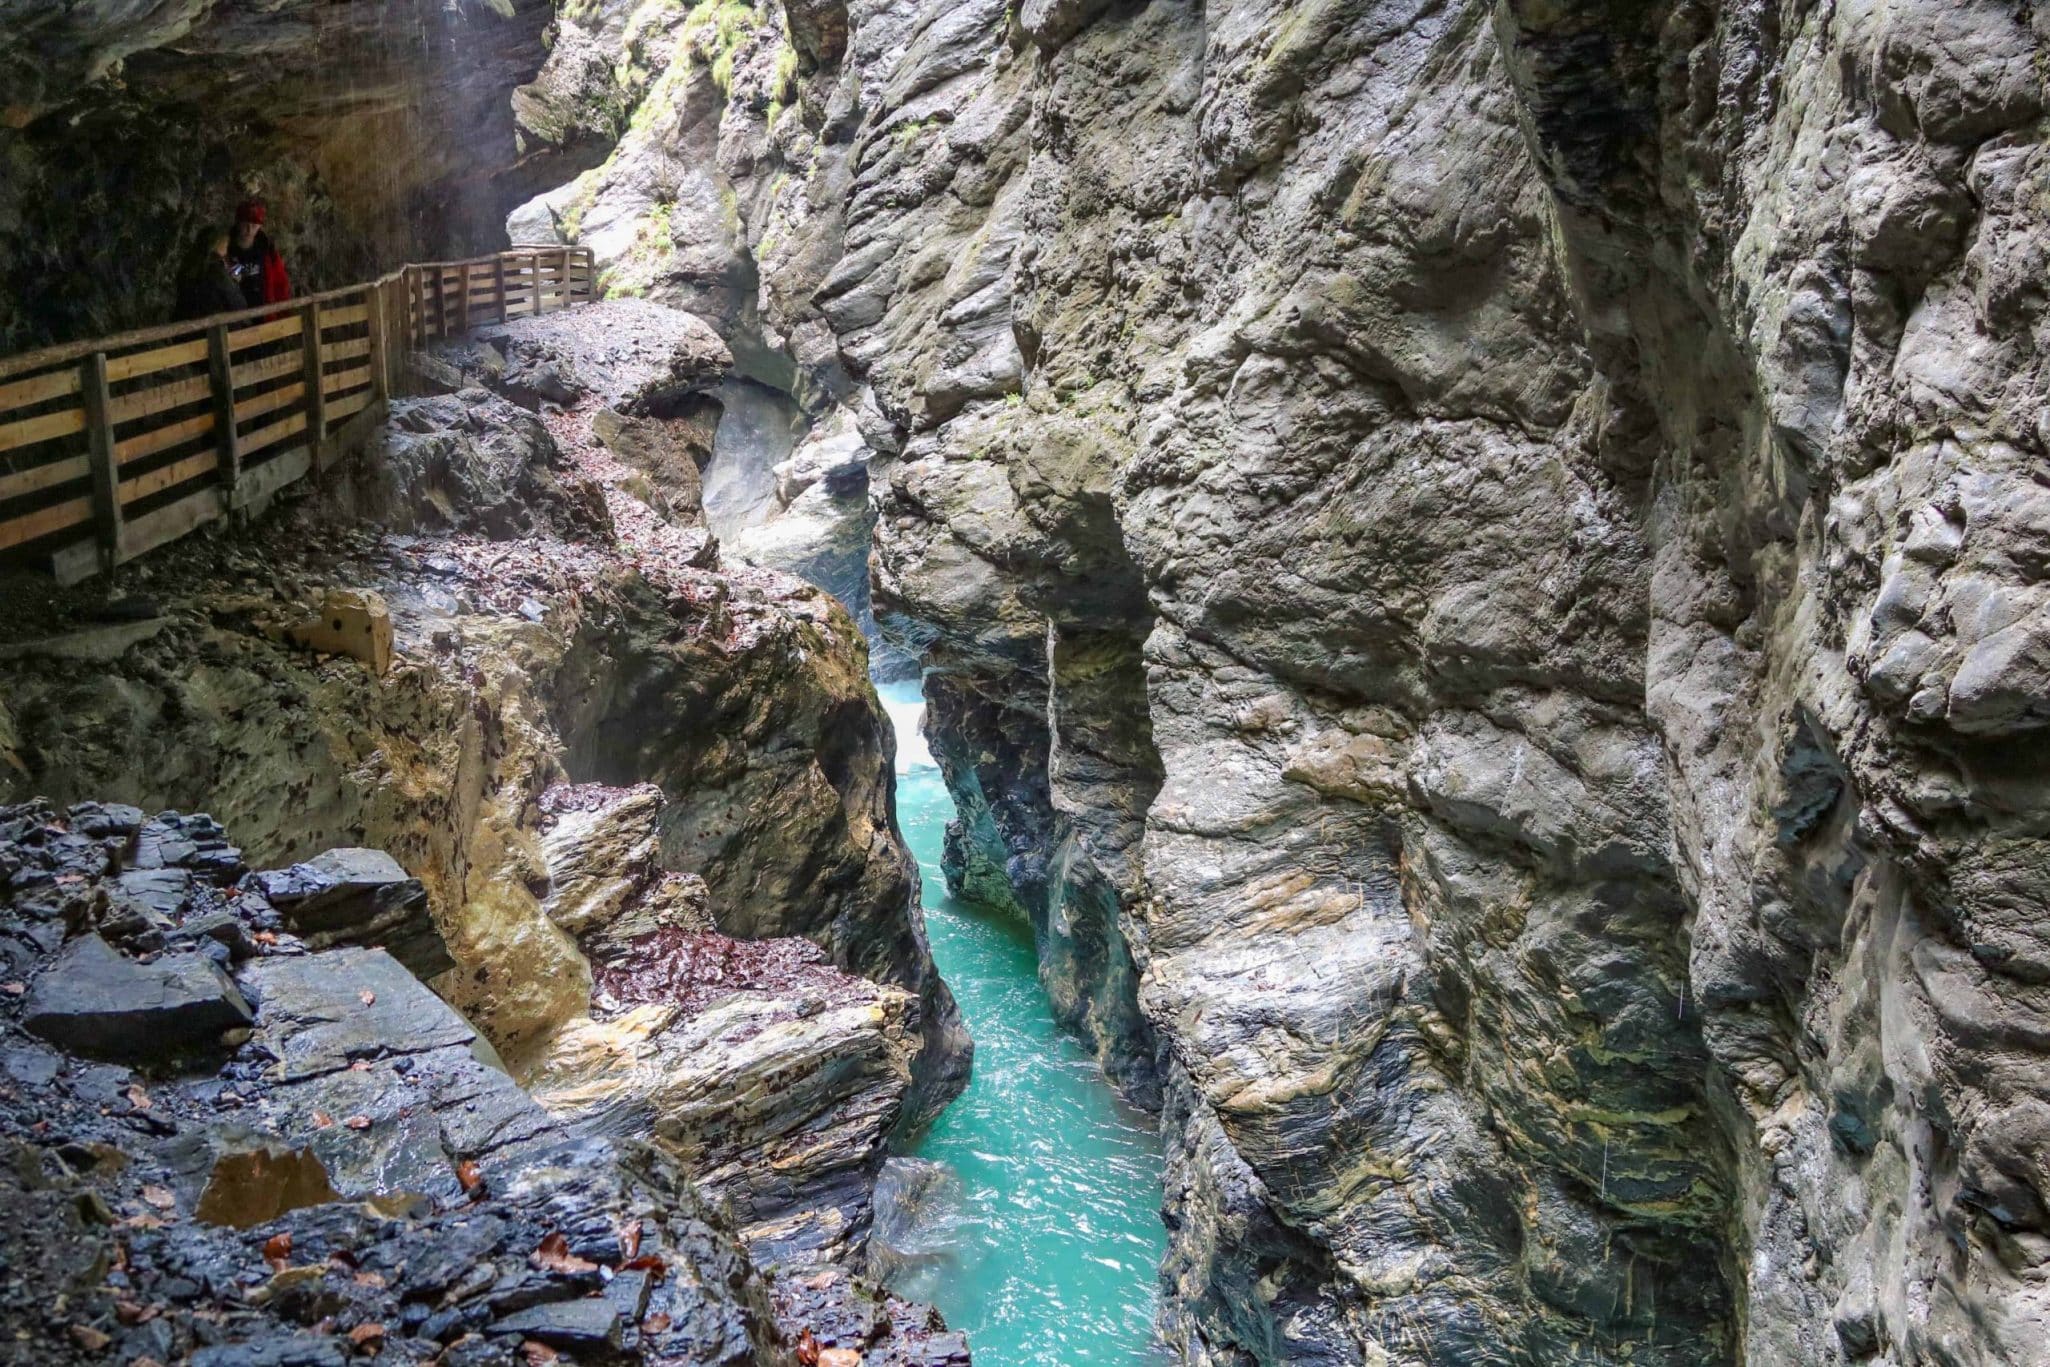 Liechtensteinklamm Gorge in Salzburg, Austria: The Ultimate Guide